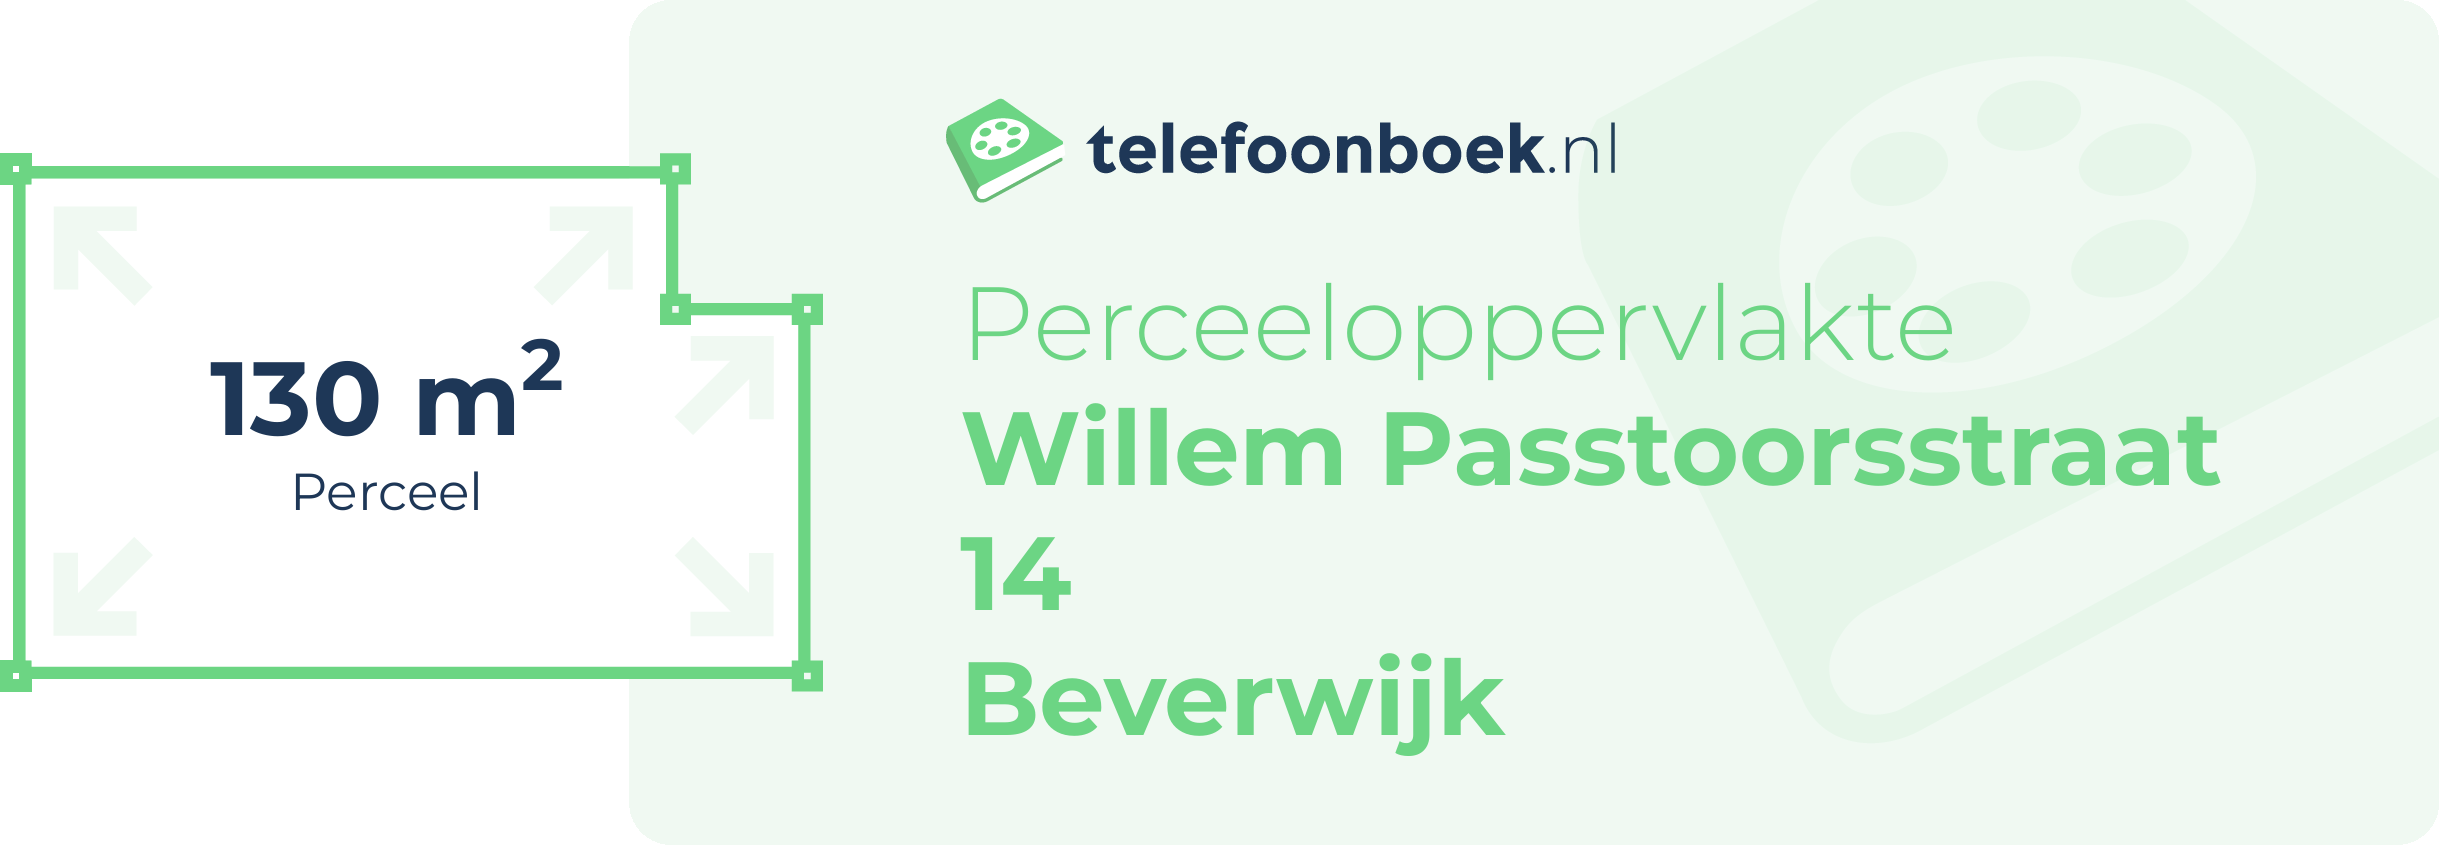 Perceeloppervlakte Willem Passtoorsstraat 14 Beverwijk